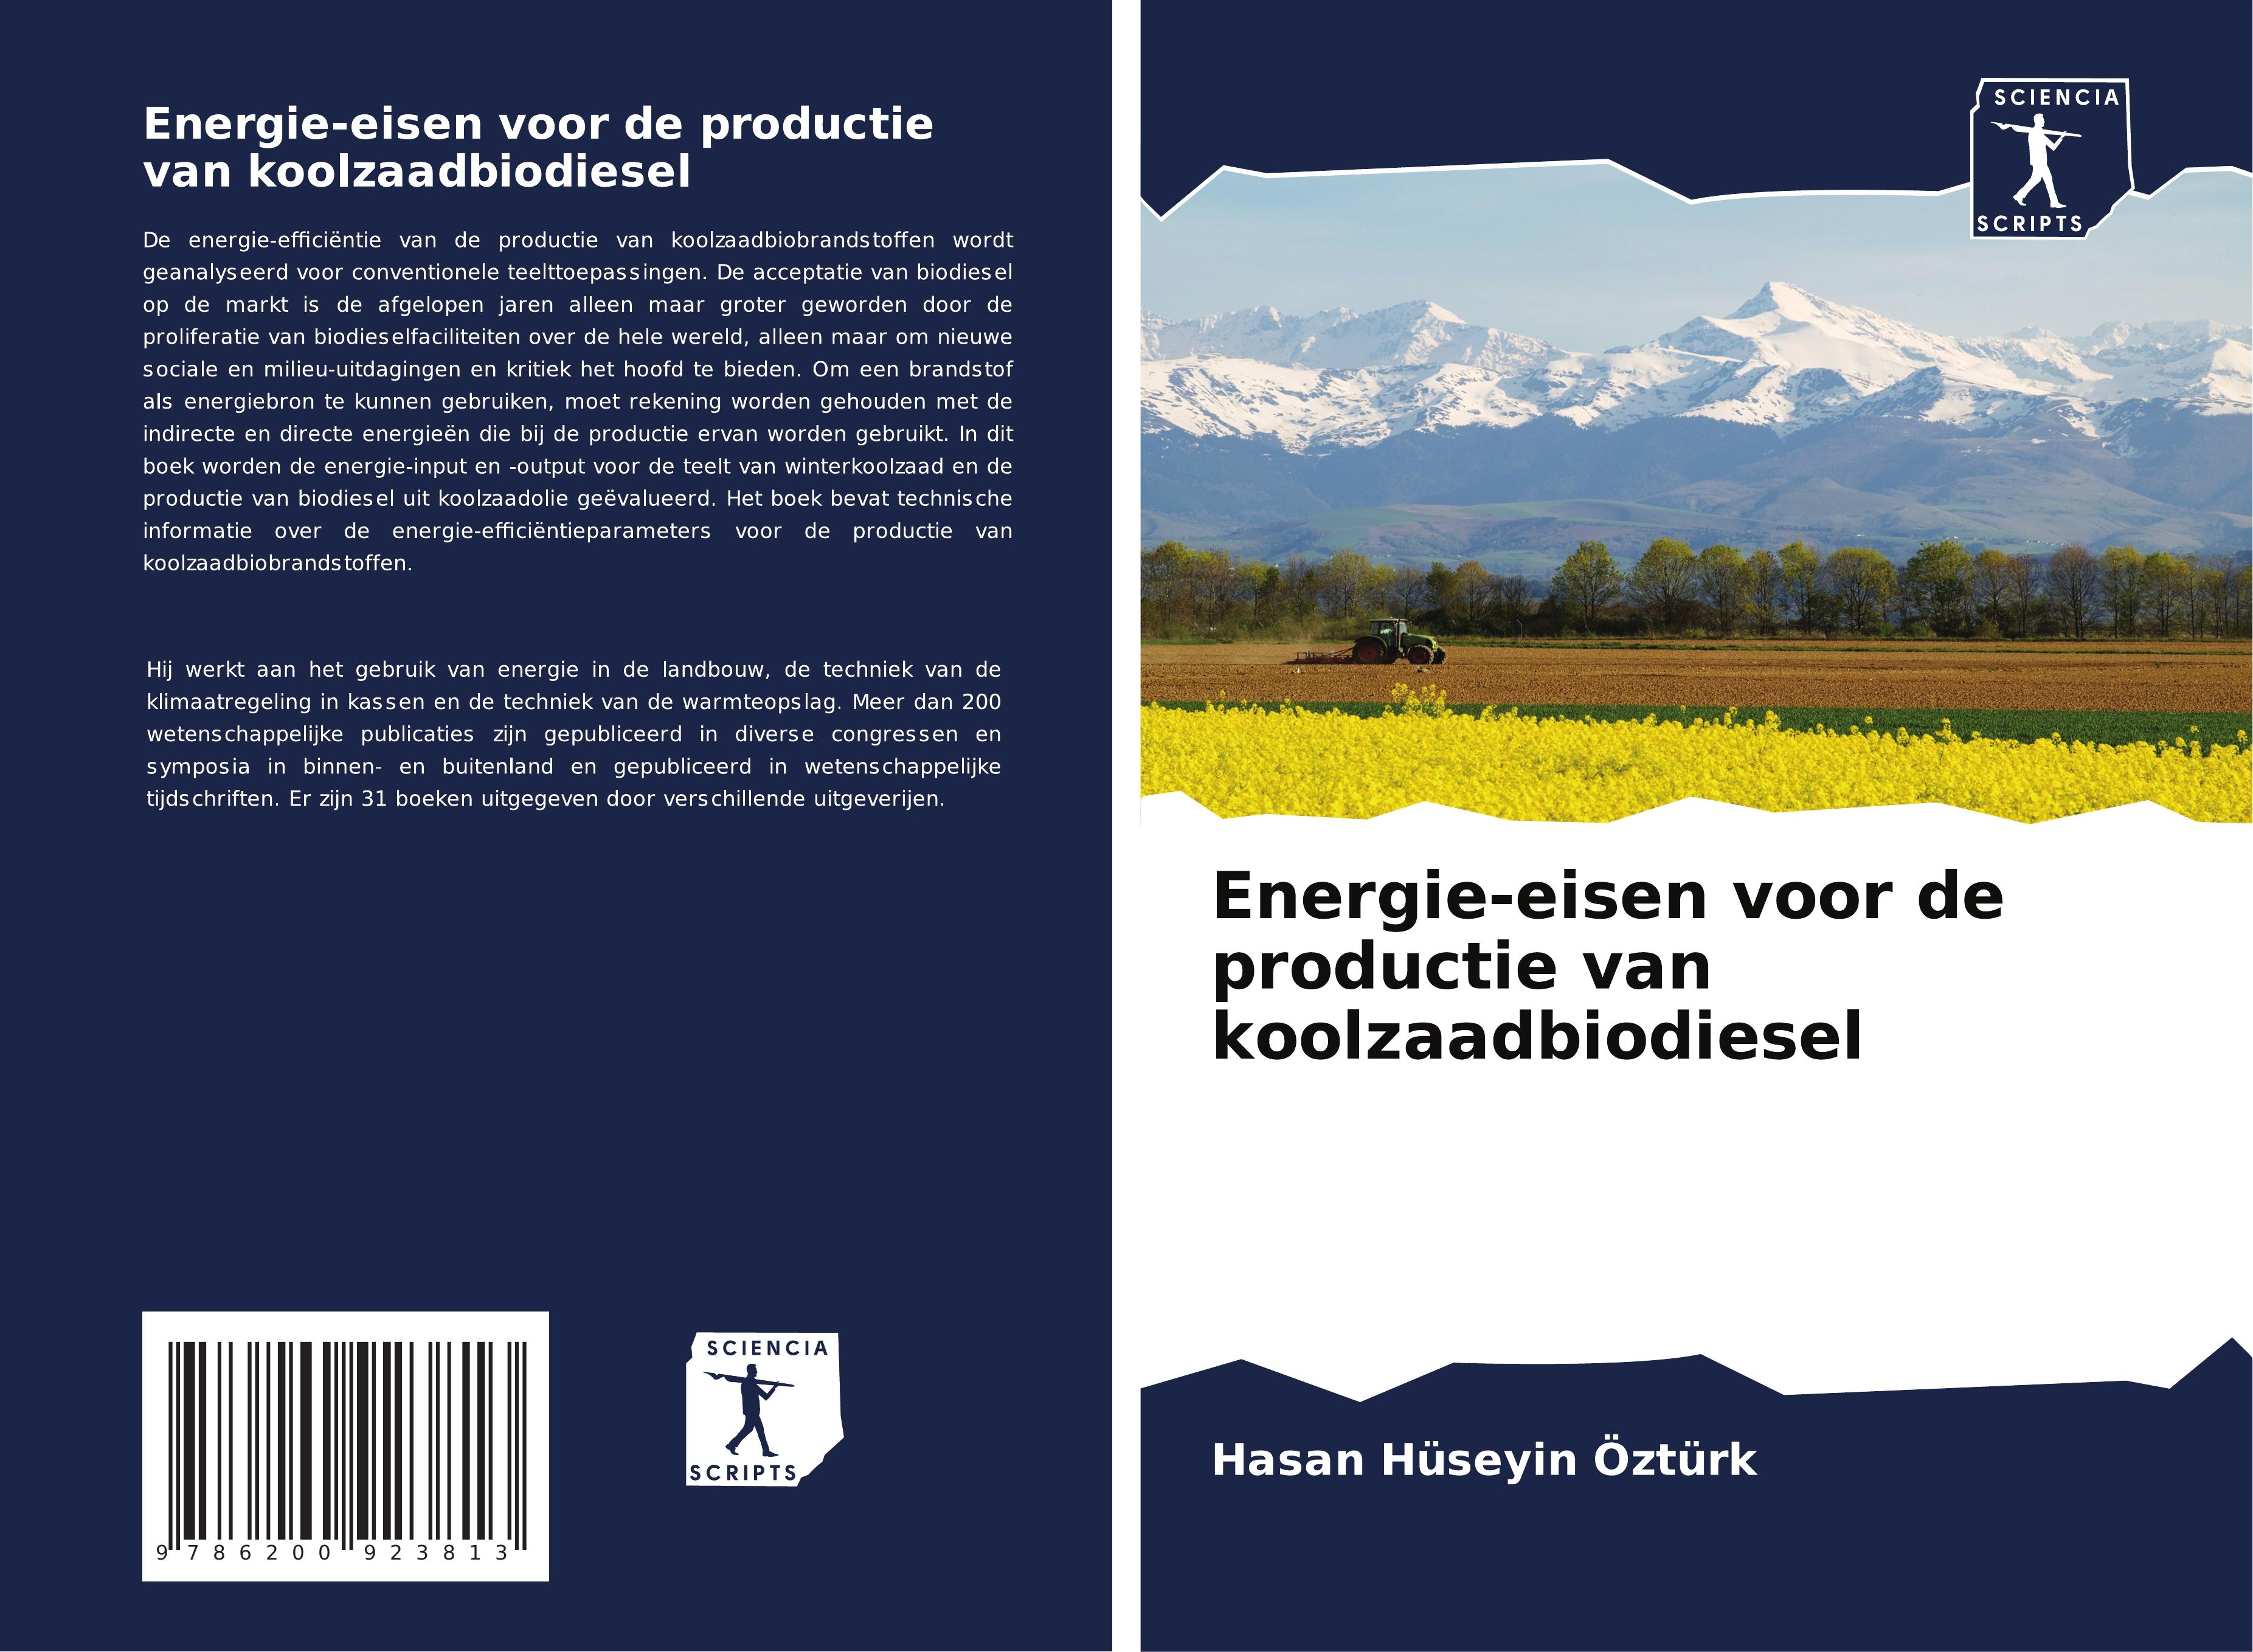 Energie-eisen voor de productie van koolzaadbiodiesel - Hueseyin Oeztuerk, Hasan